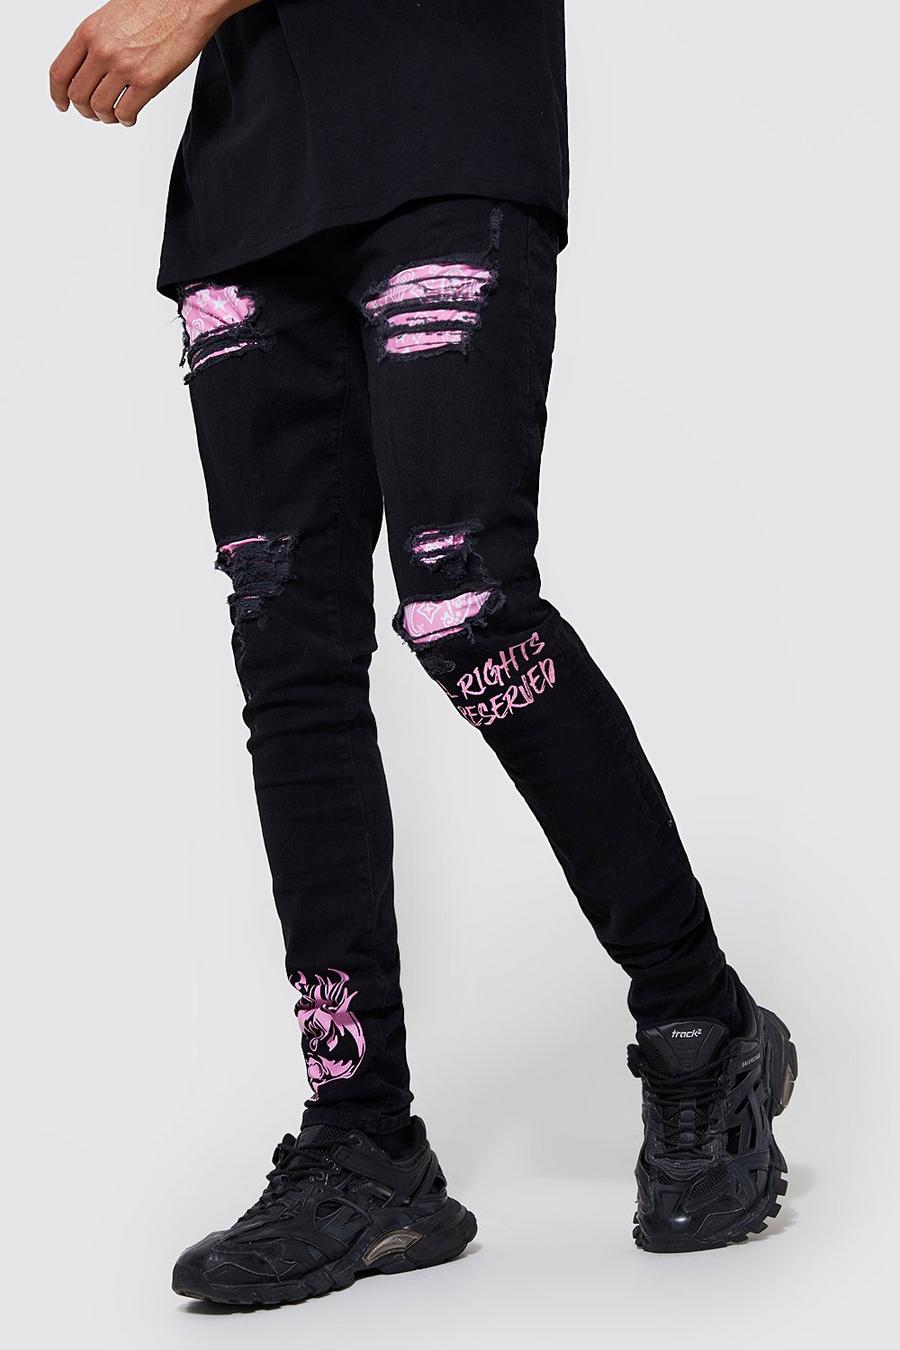 Black סקיני ג'ינס עם דוגמת בנדנה-גרפיטי וקרעים, לגברים גבוהים